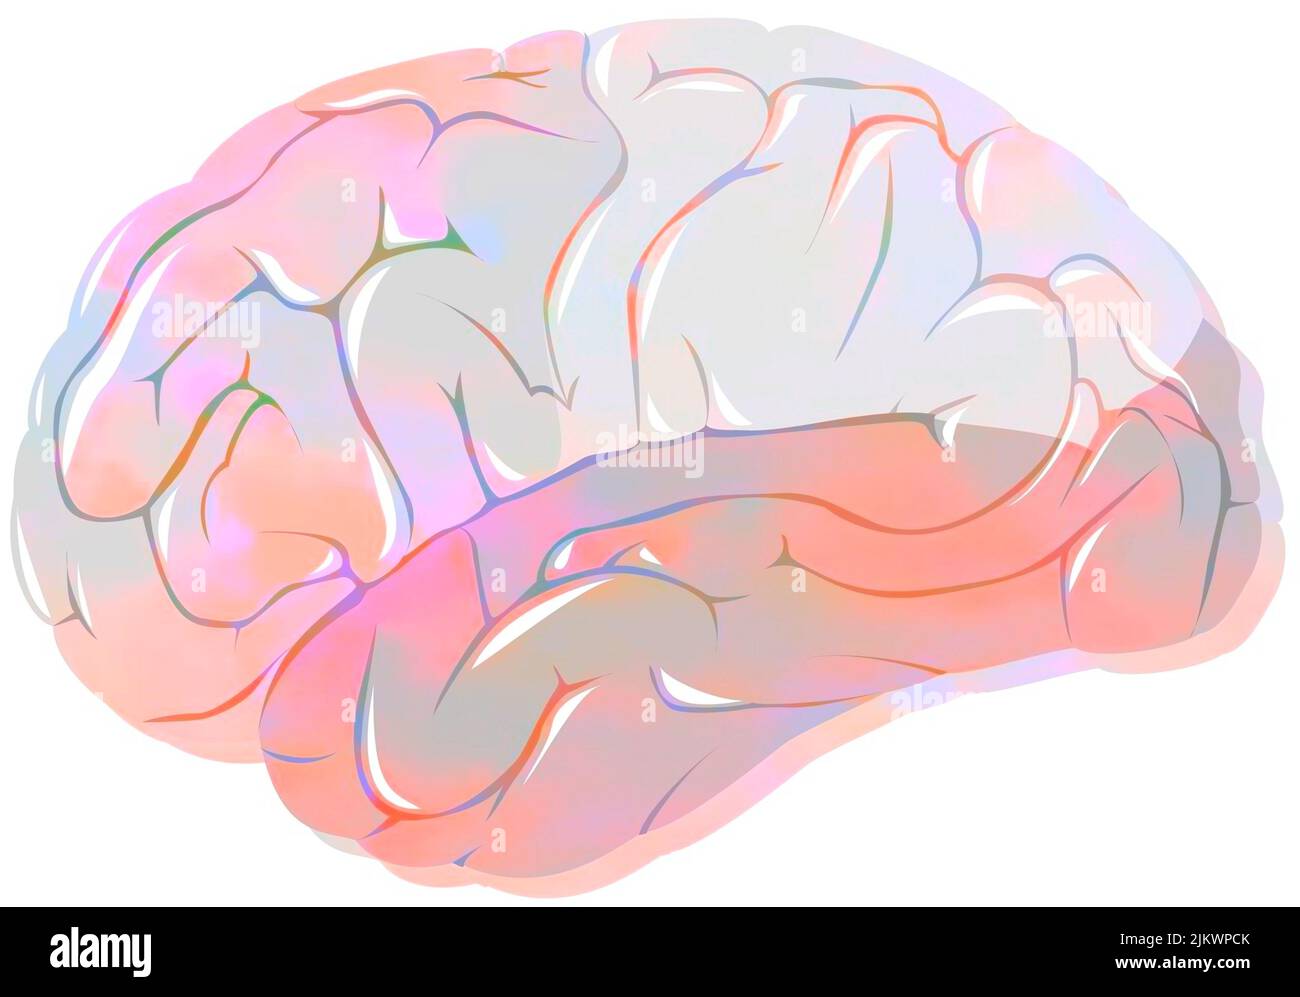 Lóbulos del cerebro con los lóbulos frontal, parietal, temporal y occipital. Foto de stock